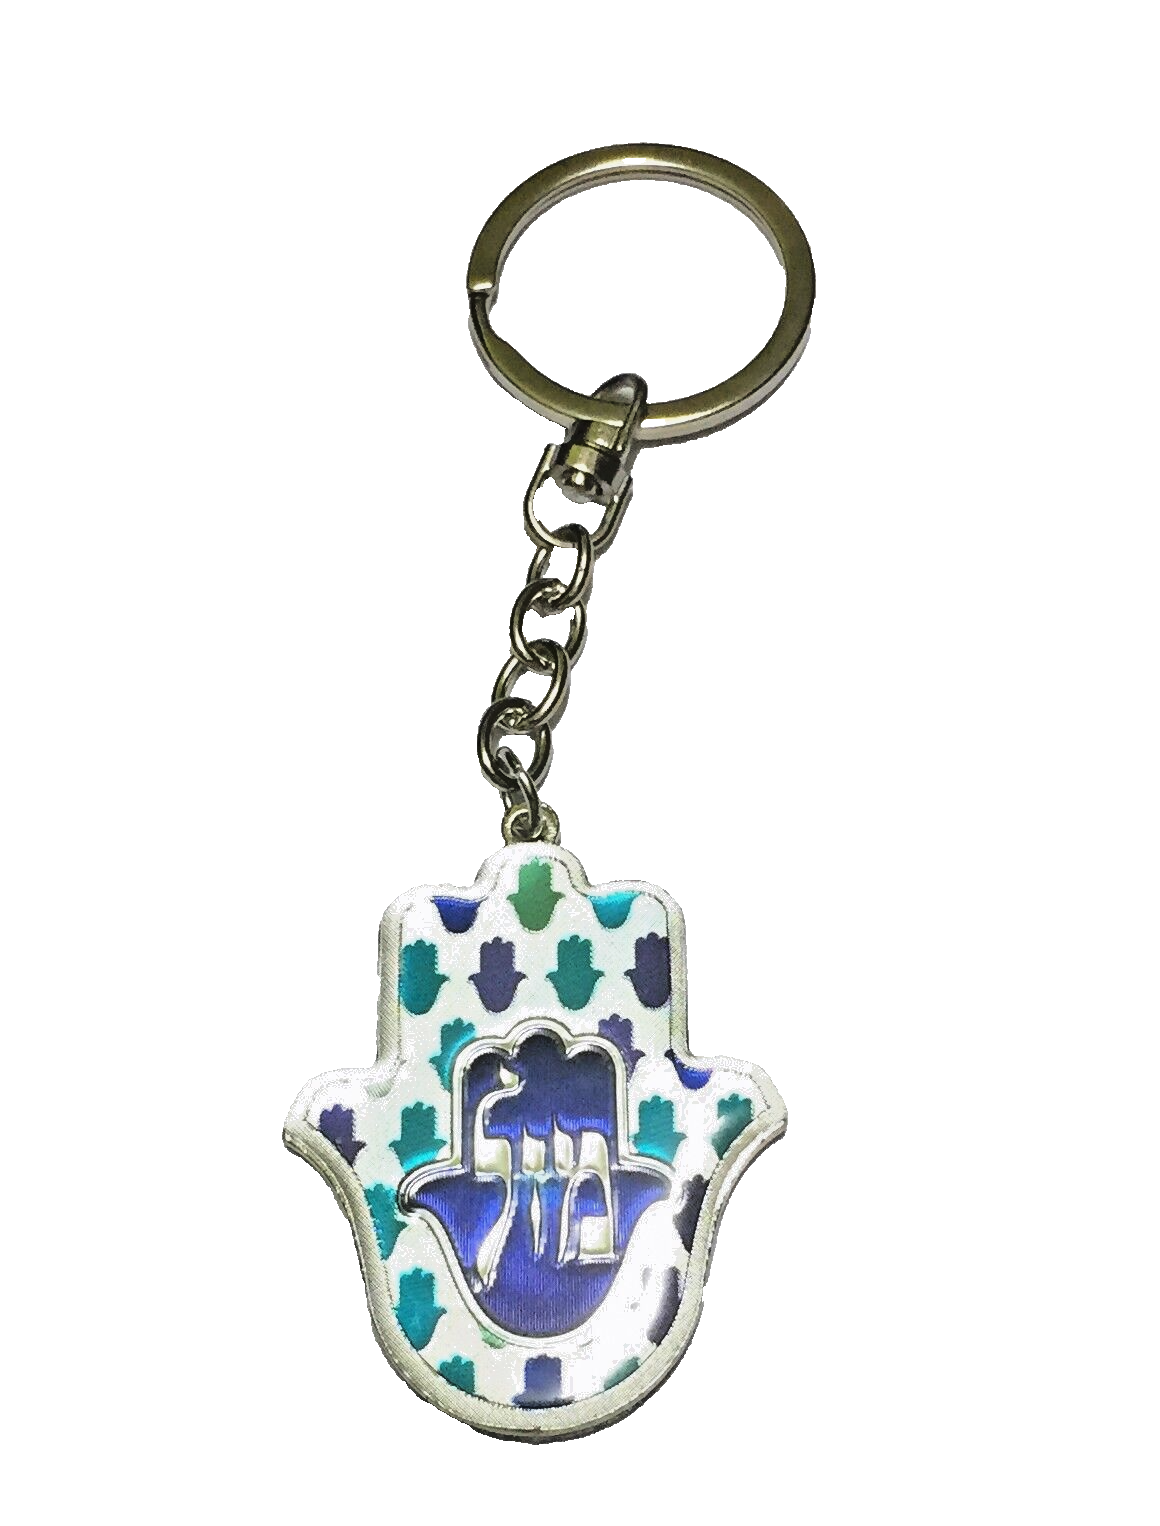 Judaica Keyring Keychain Key Charm Holder Hamsa Metal Epoxy Blue Traveler Prayer